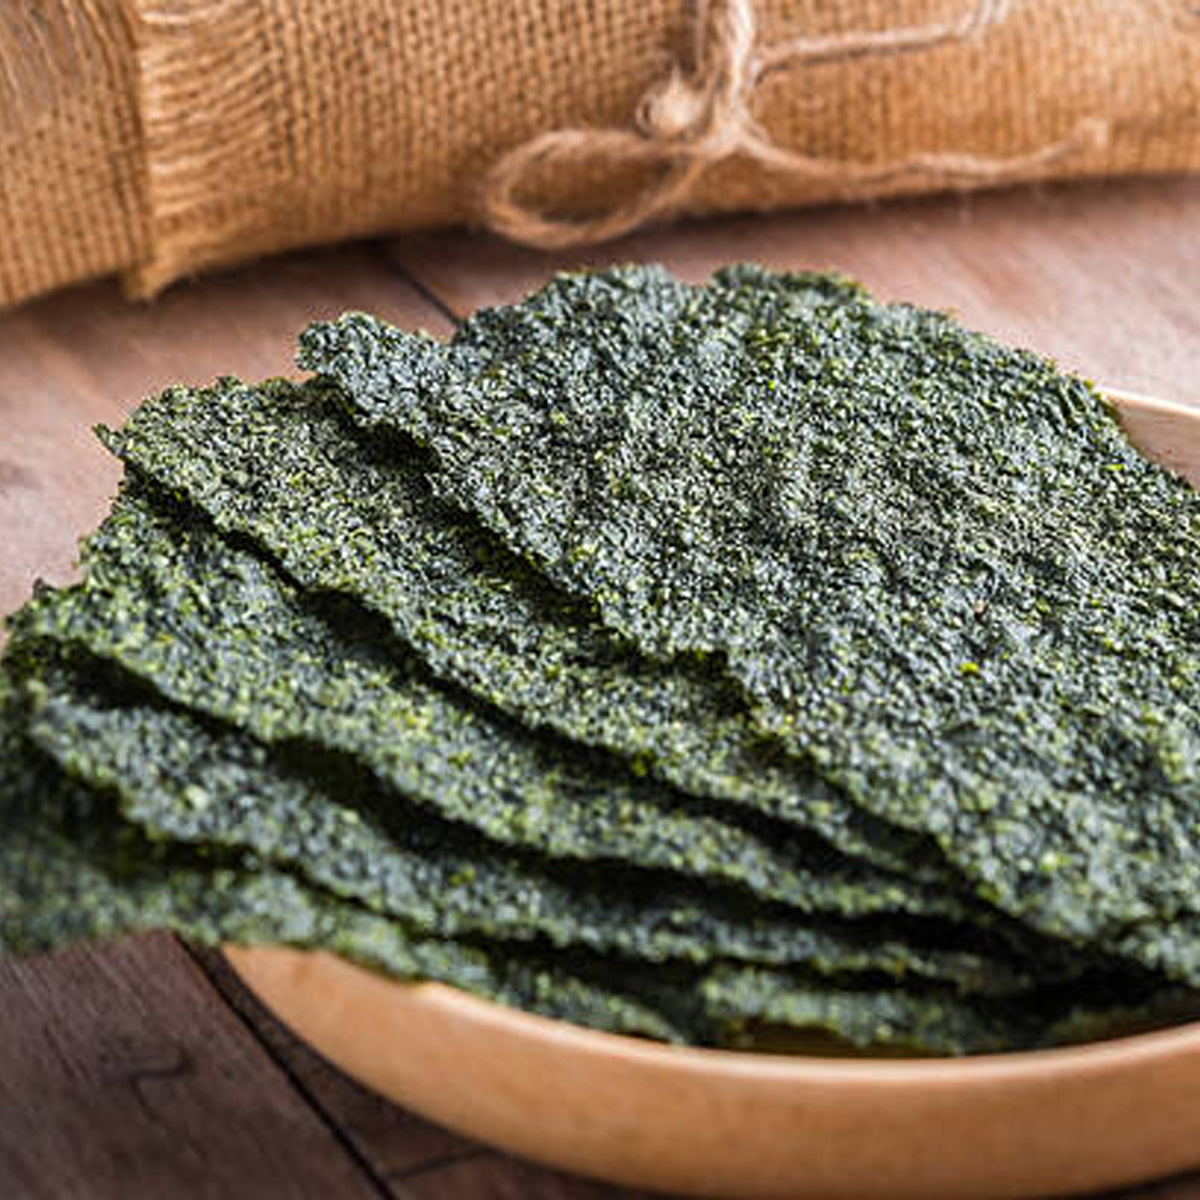 Premium Roasted Nori Seaweed from Mikawa Bay